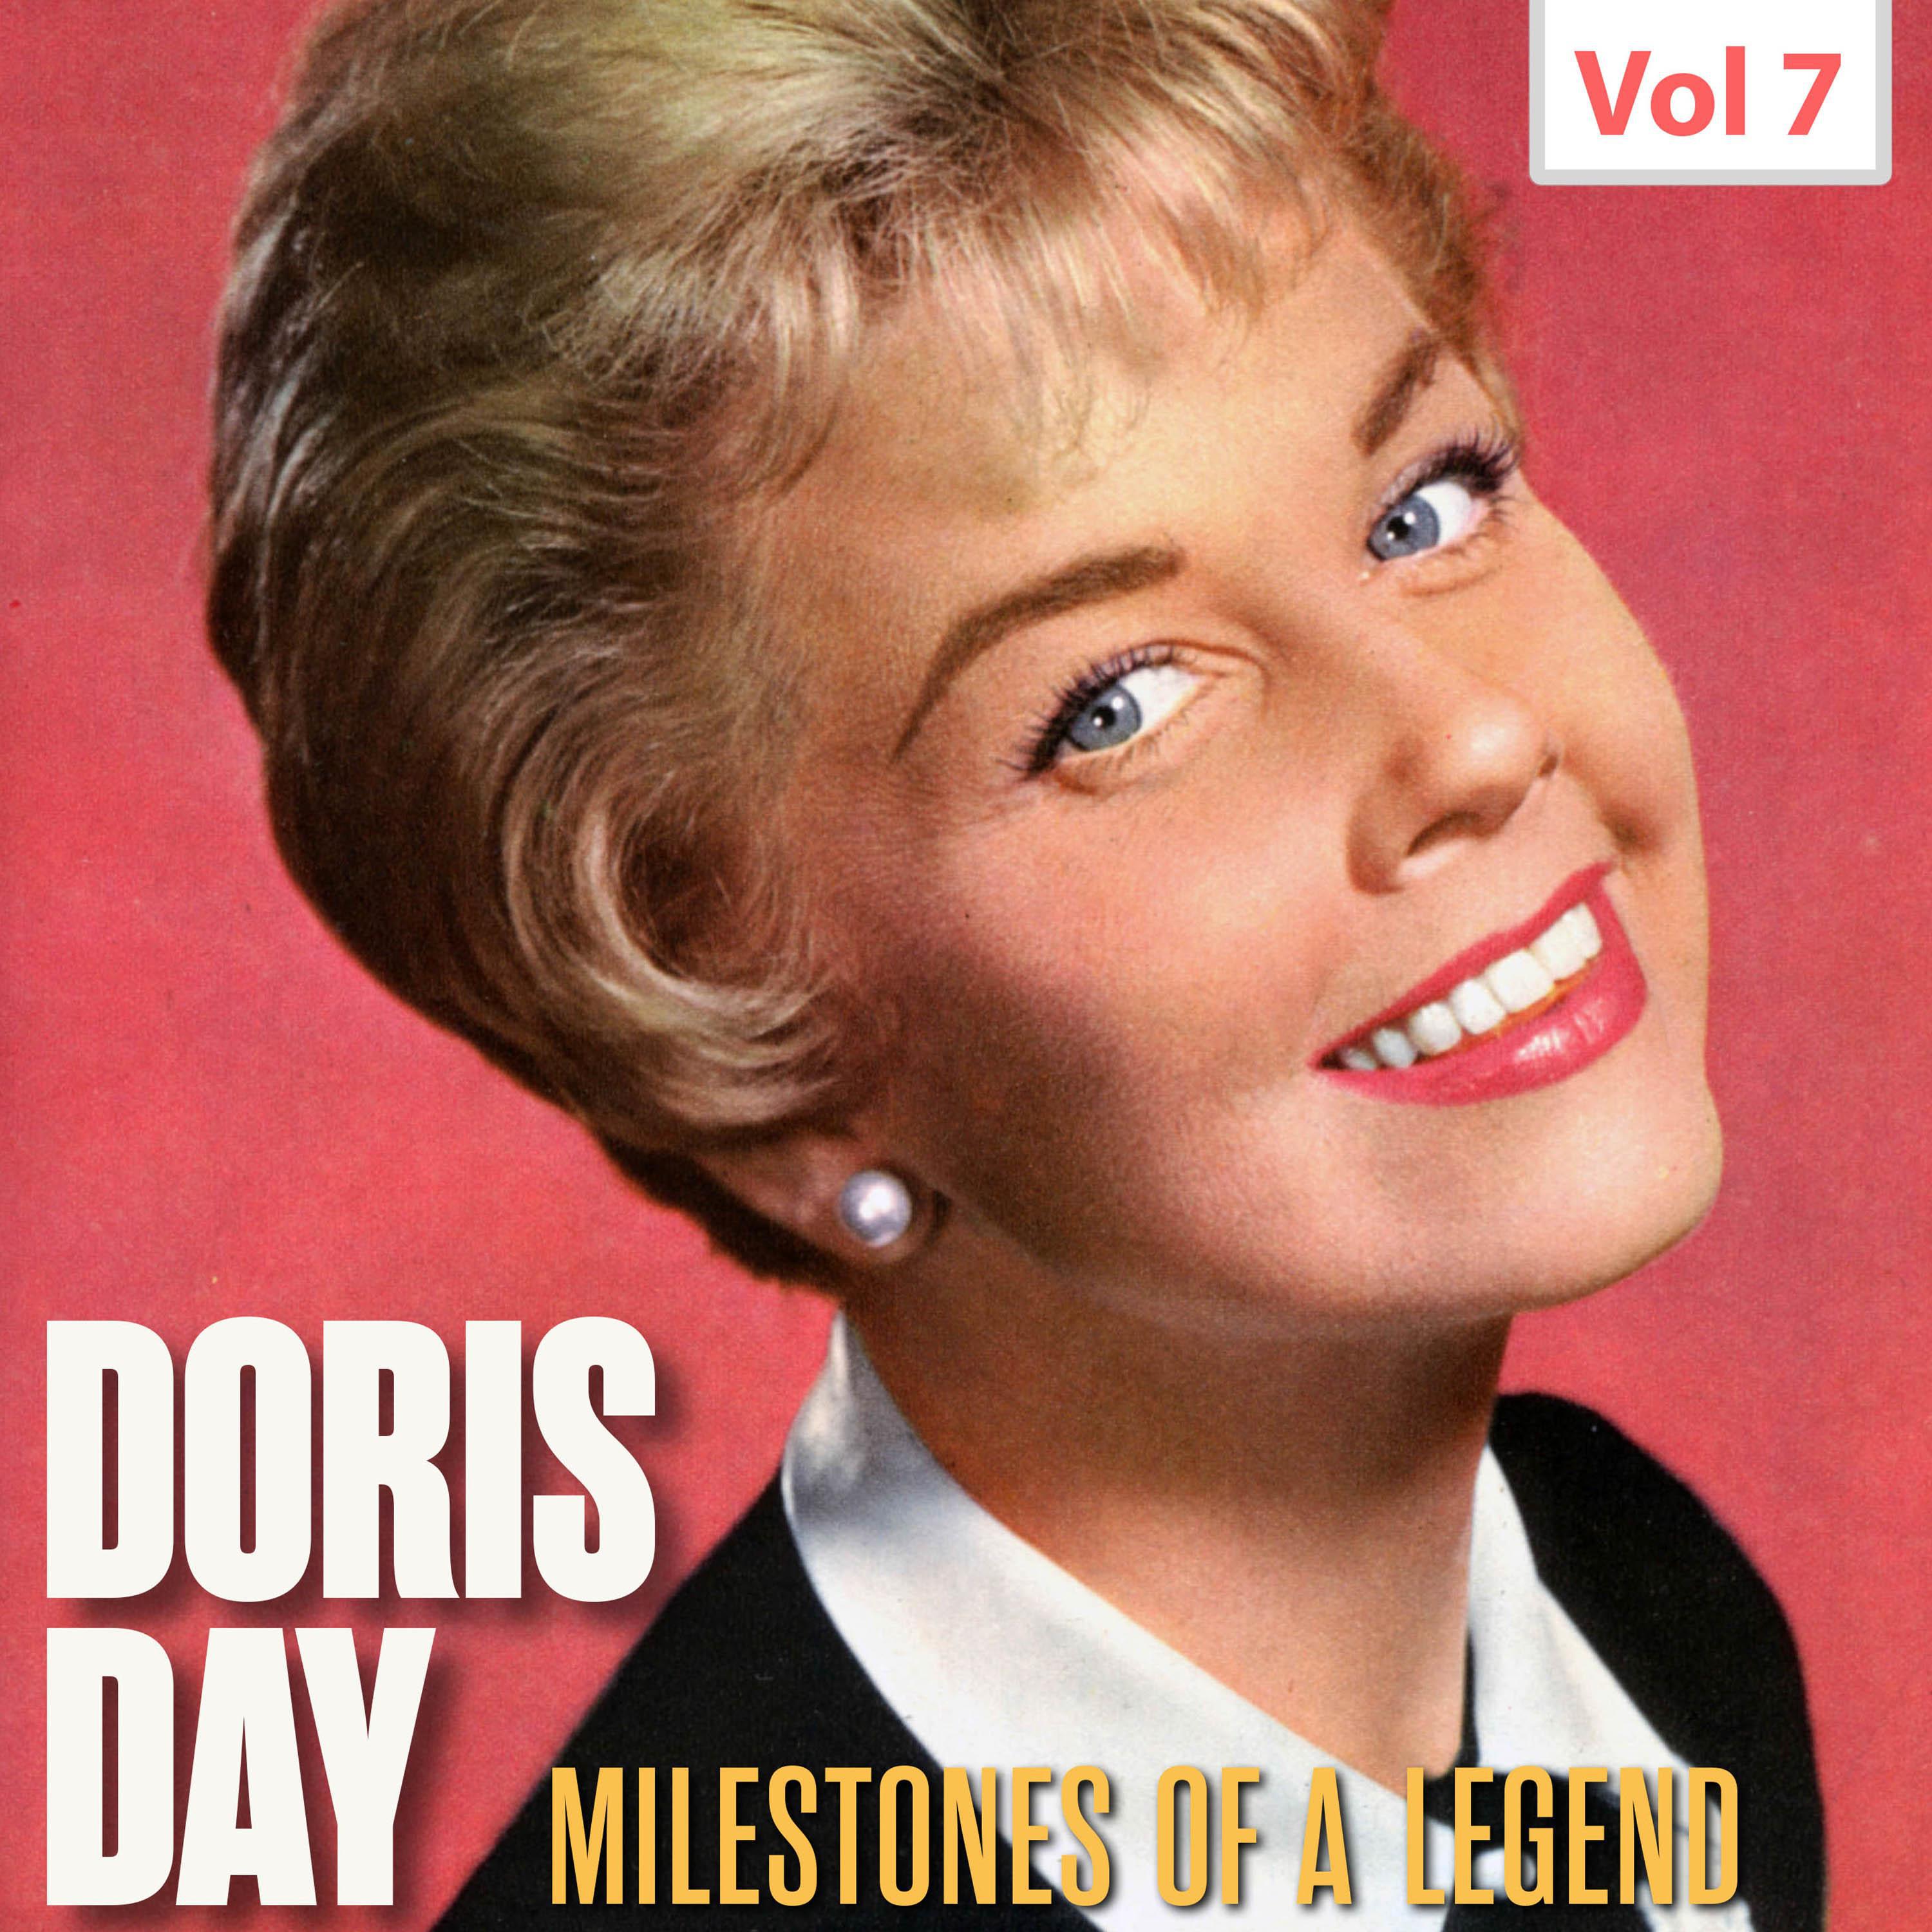 Milestones of a Legend - Doris Day, Vol. 7